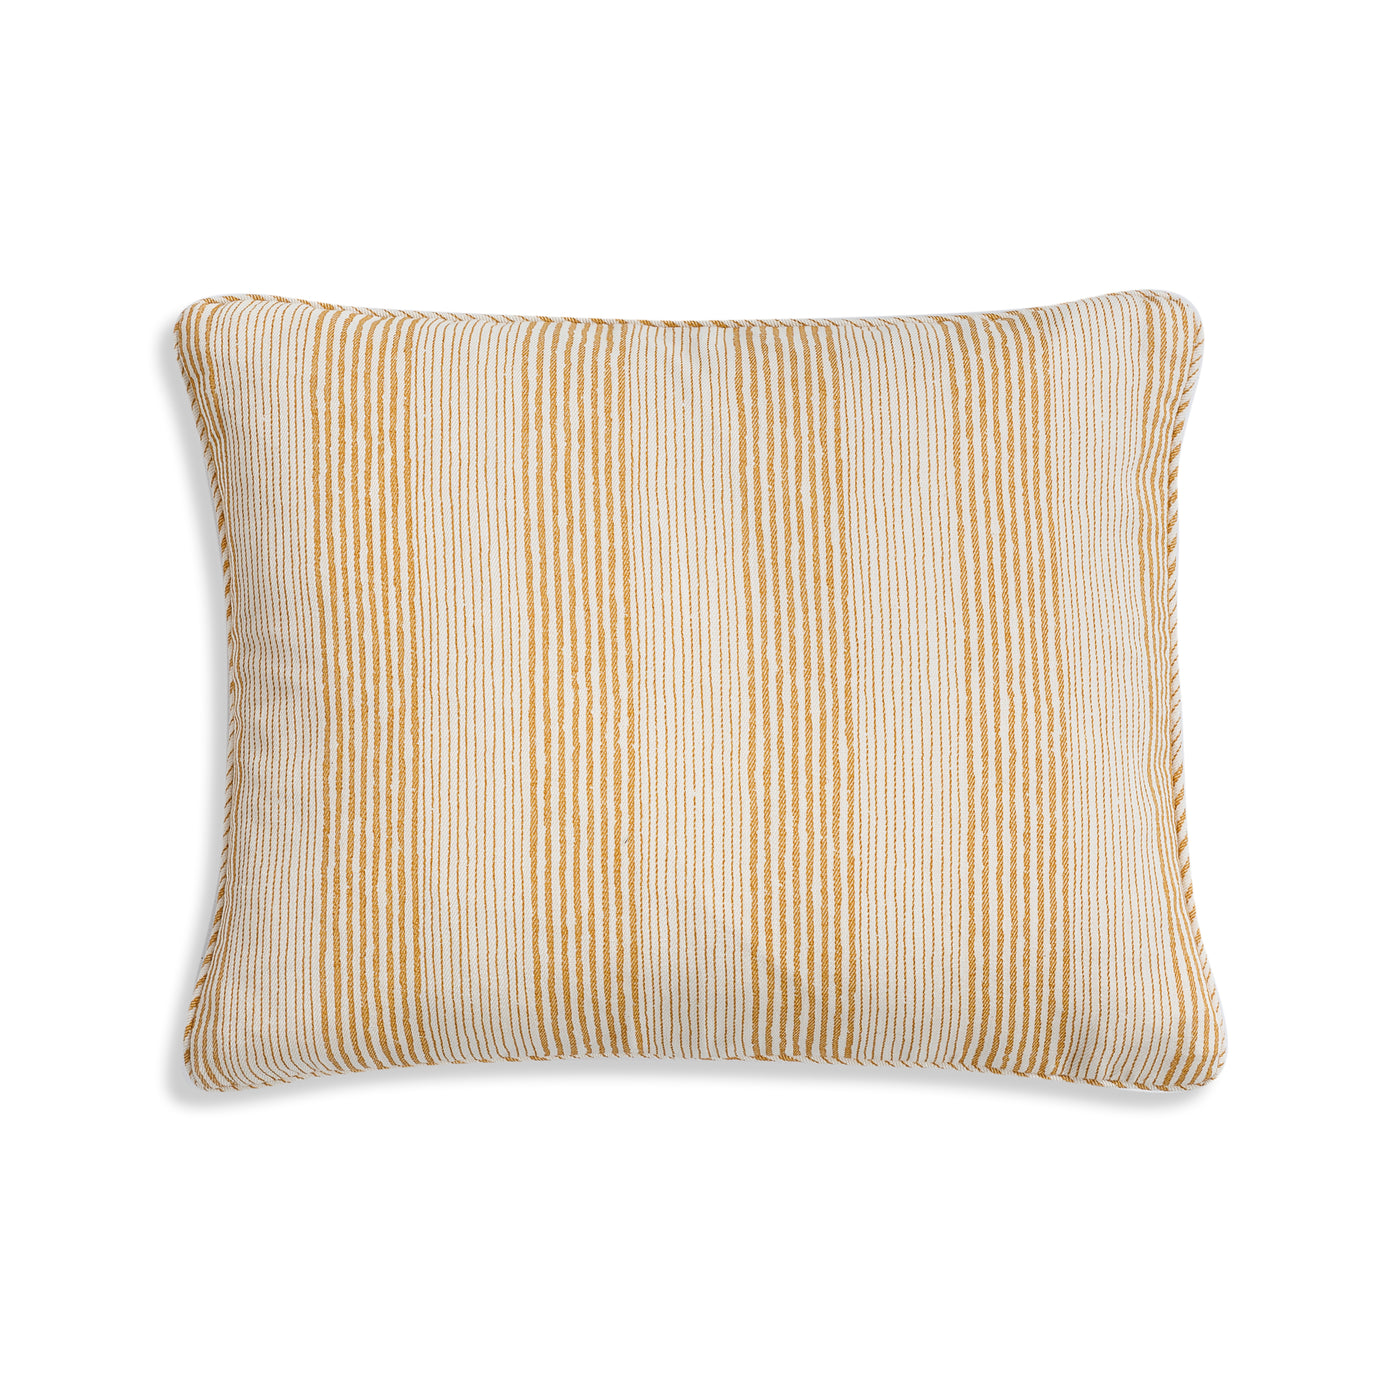 Fermoie Small Yellow Pillow